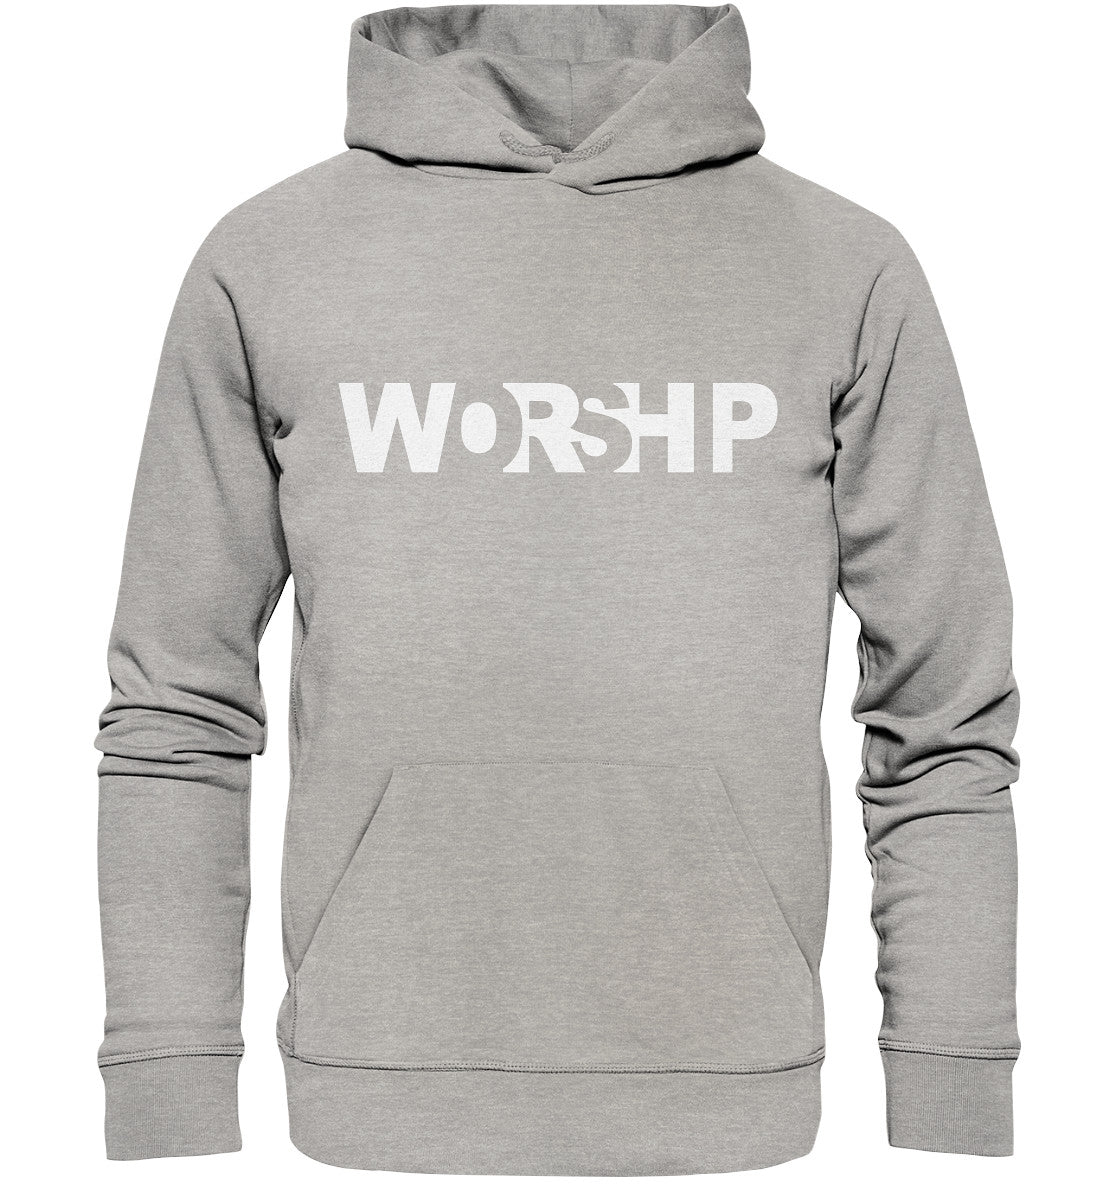 WORSHIP - Organic Basic Hoodie